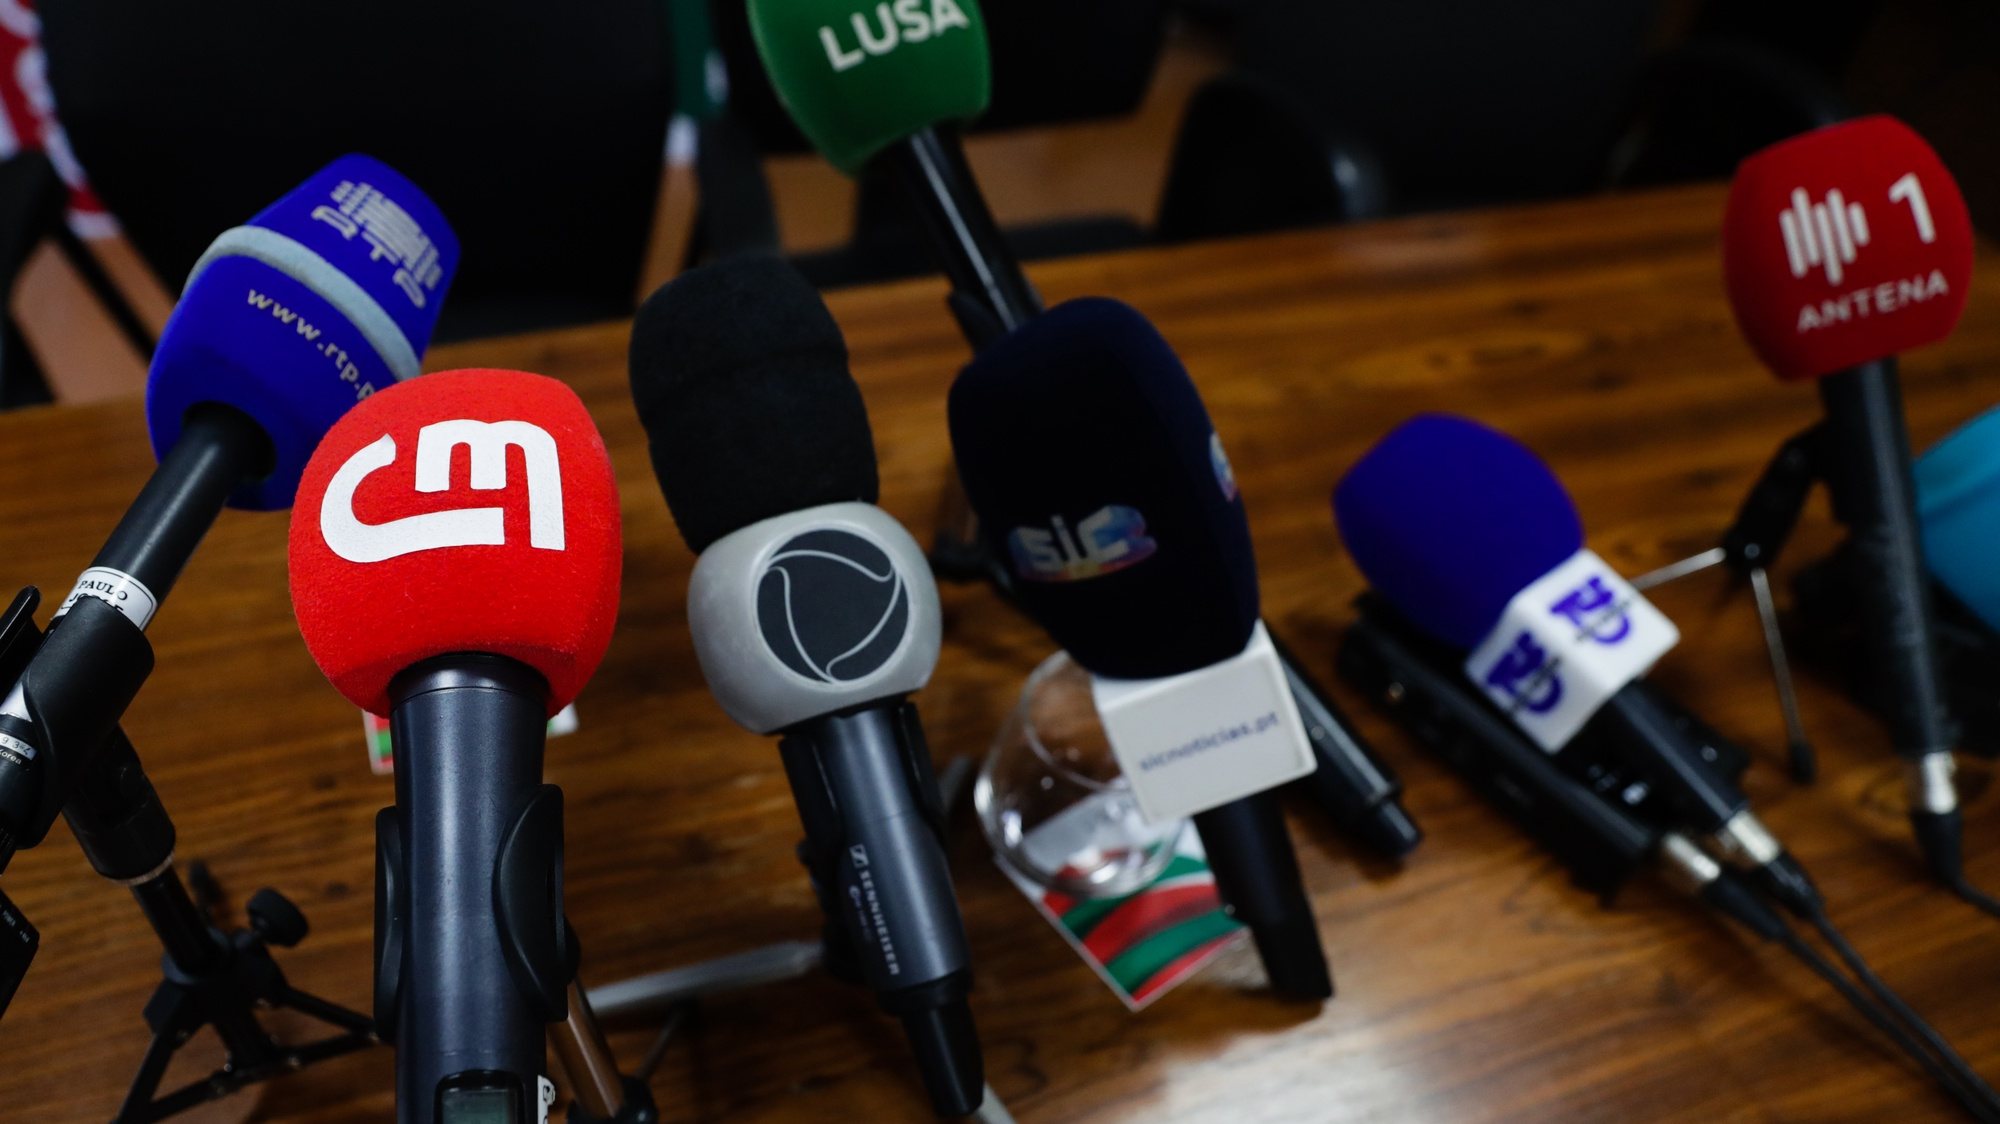 Microfones dos vários órgãos de comunicação (RTP; CM; RECORD; SIC; LUSA; TSF; ANTENA 1) numa conferência de imprensa em Lisboa, 09 de janeiro de 2020. TIAGO PETINGA/LUSA